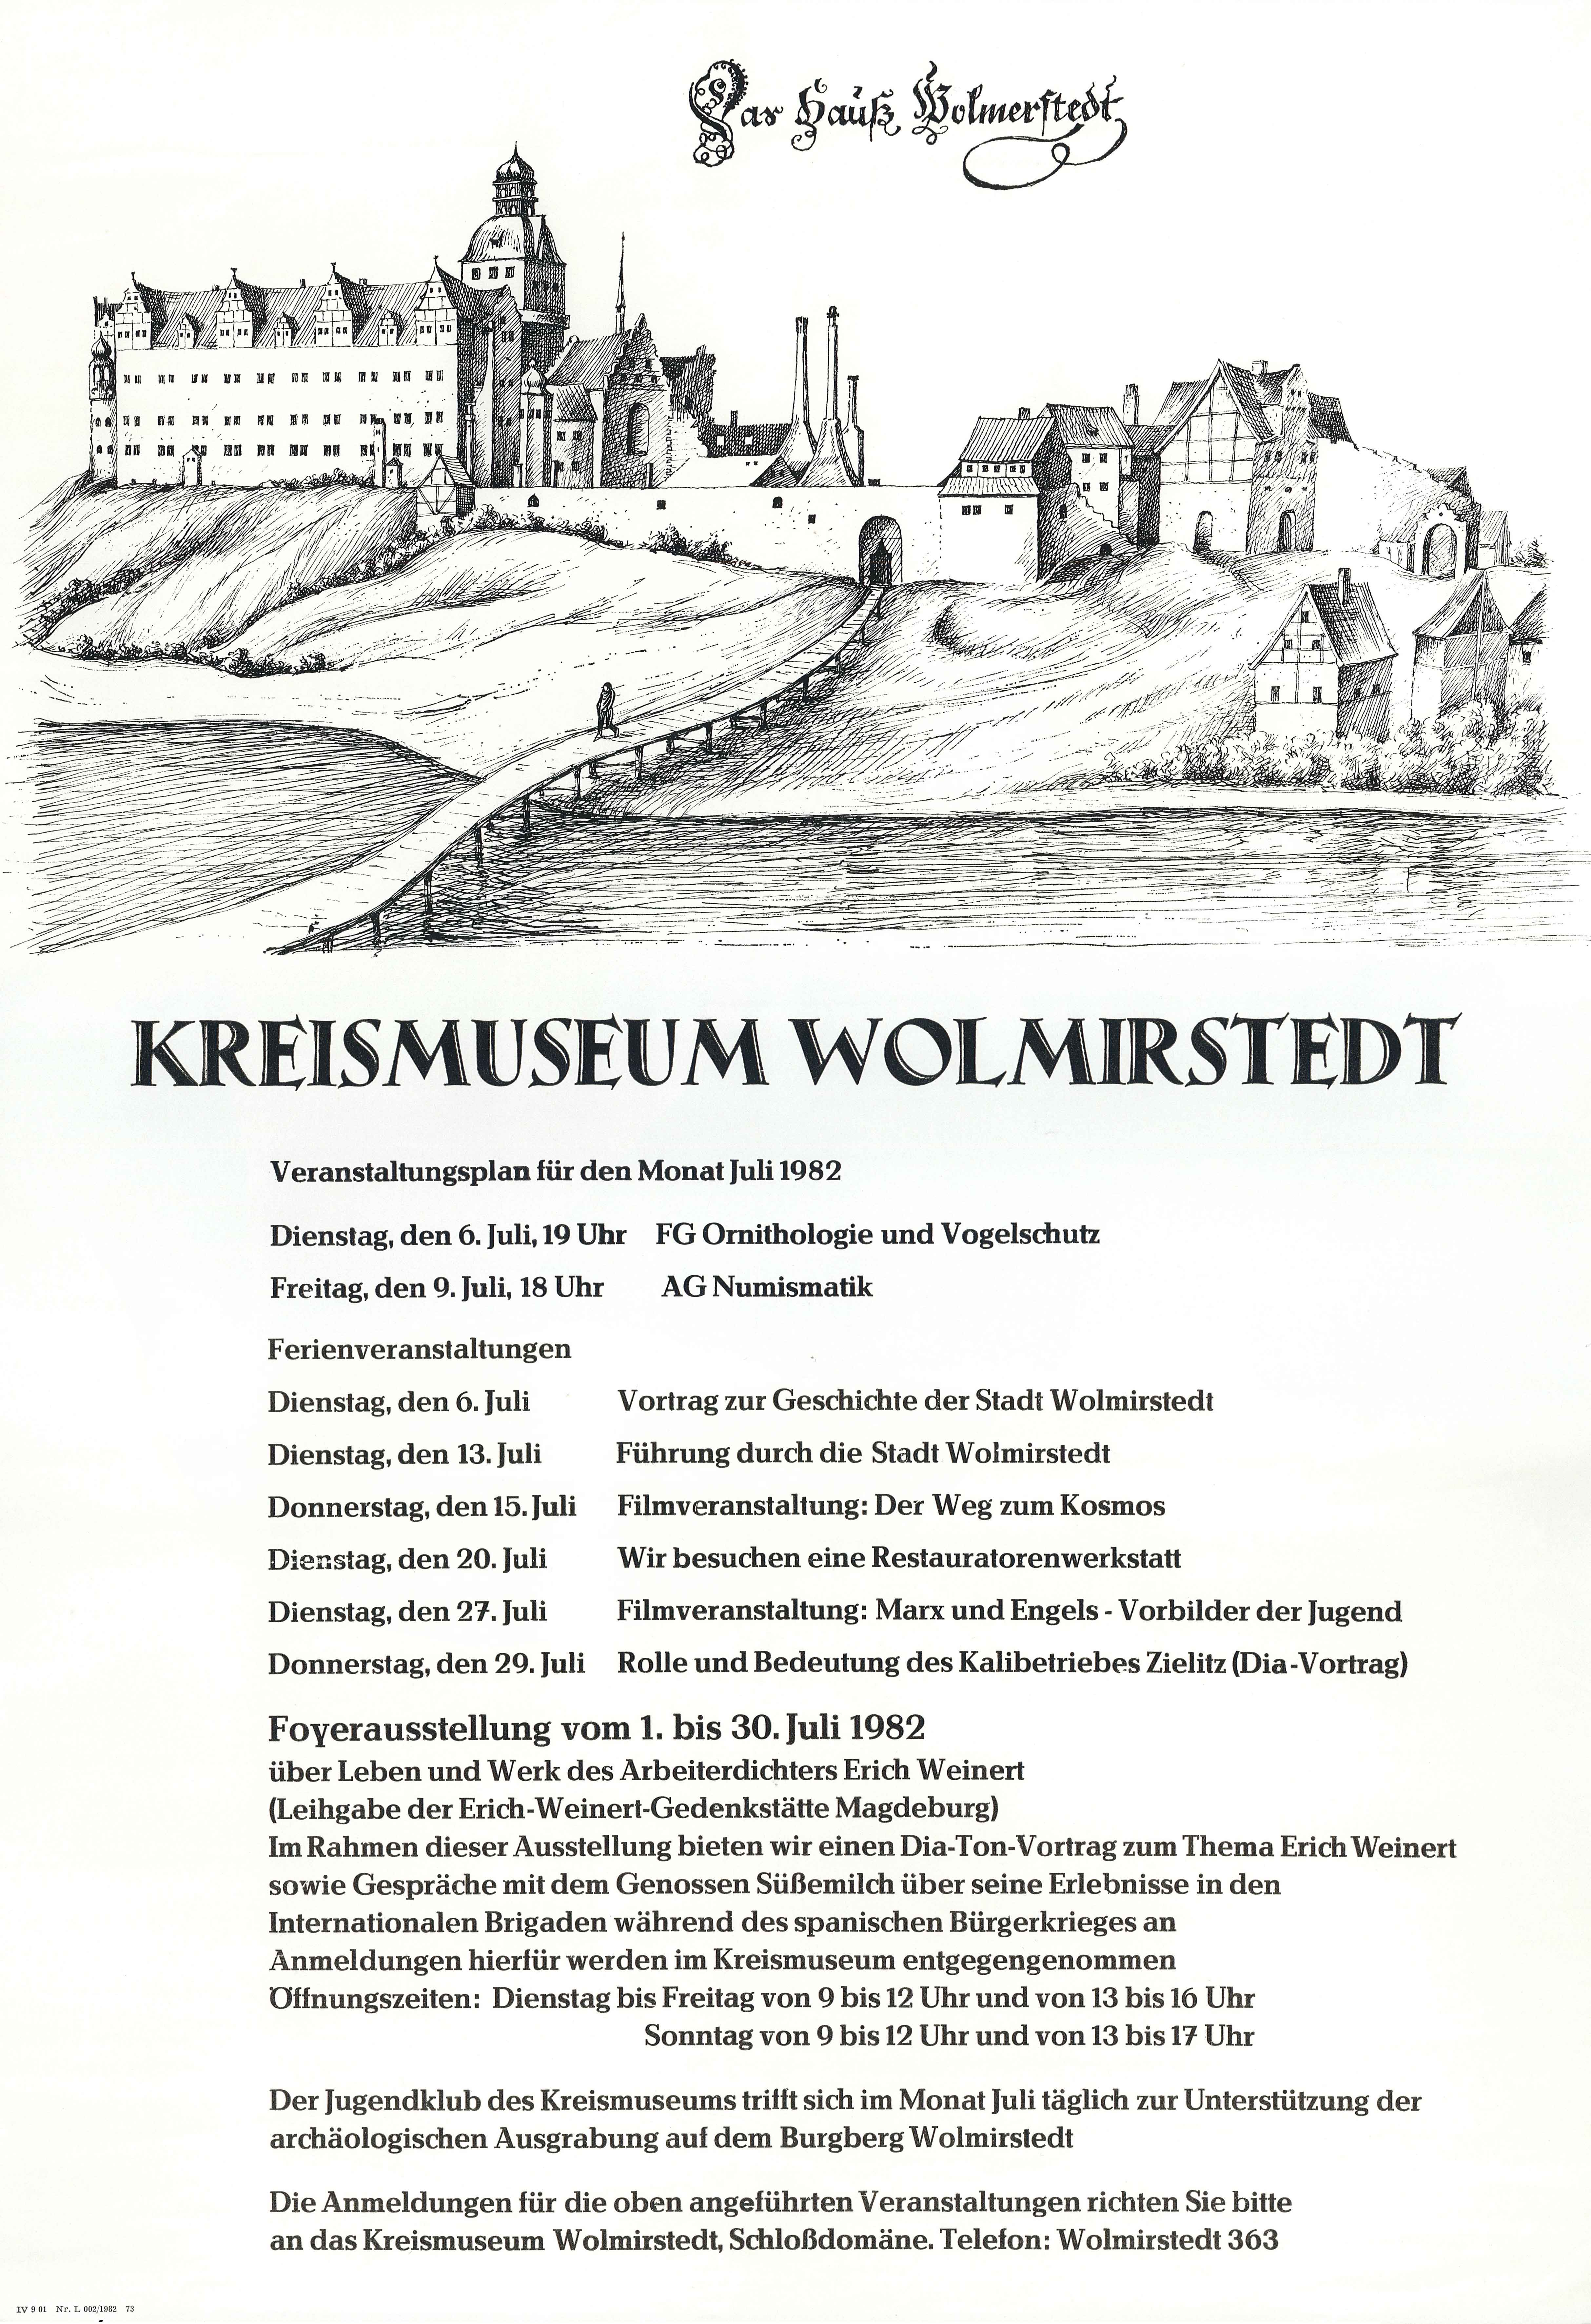 Plakat mit Veranstaltungsplan Kreismuseum Wolmirstedt für Juli 1982 (Museum Wolmirstedt RR-F)